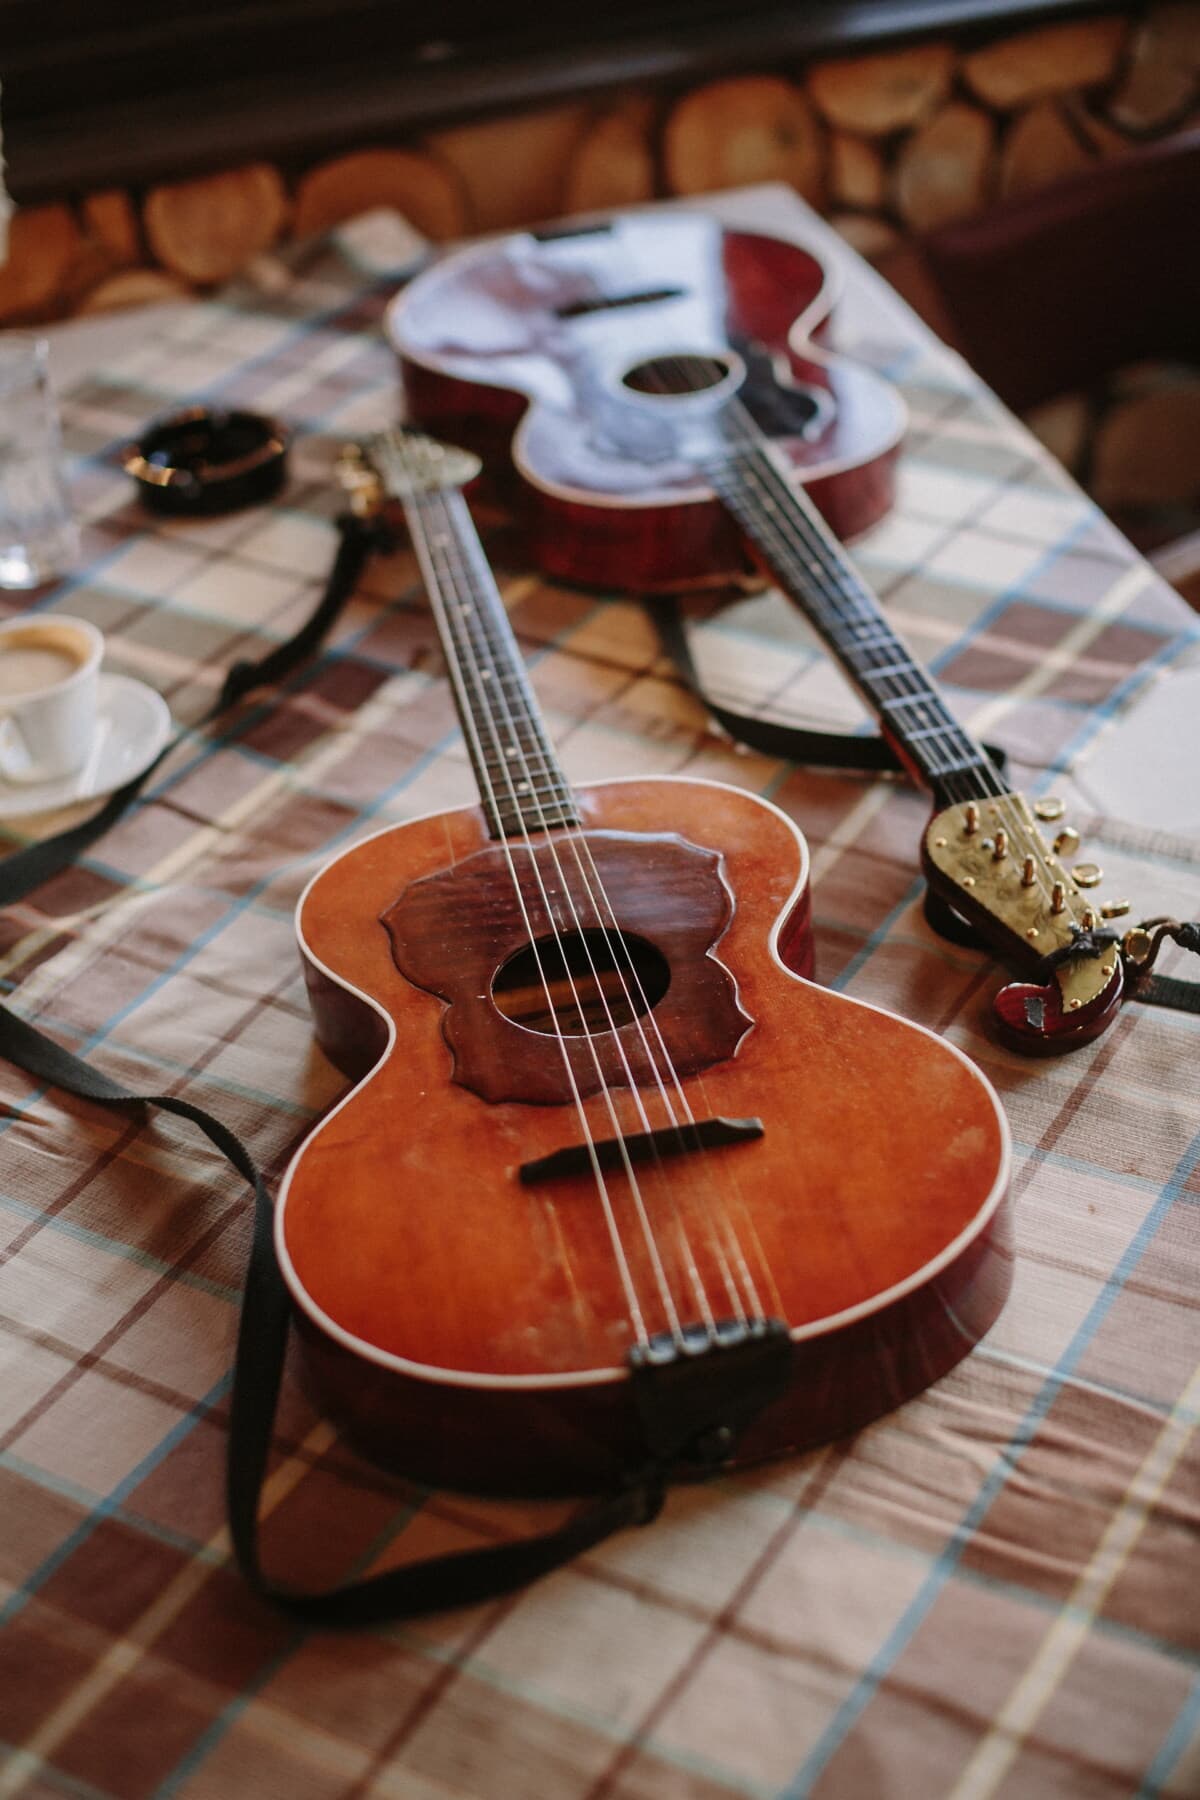 acústico, guitarra, antigüedad, hecho a mano, tabla, mantel, musical, madera, músico, instrumento